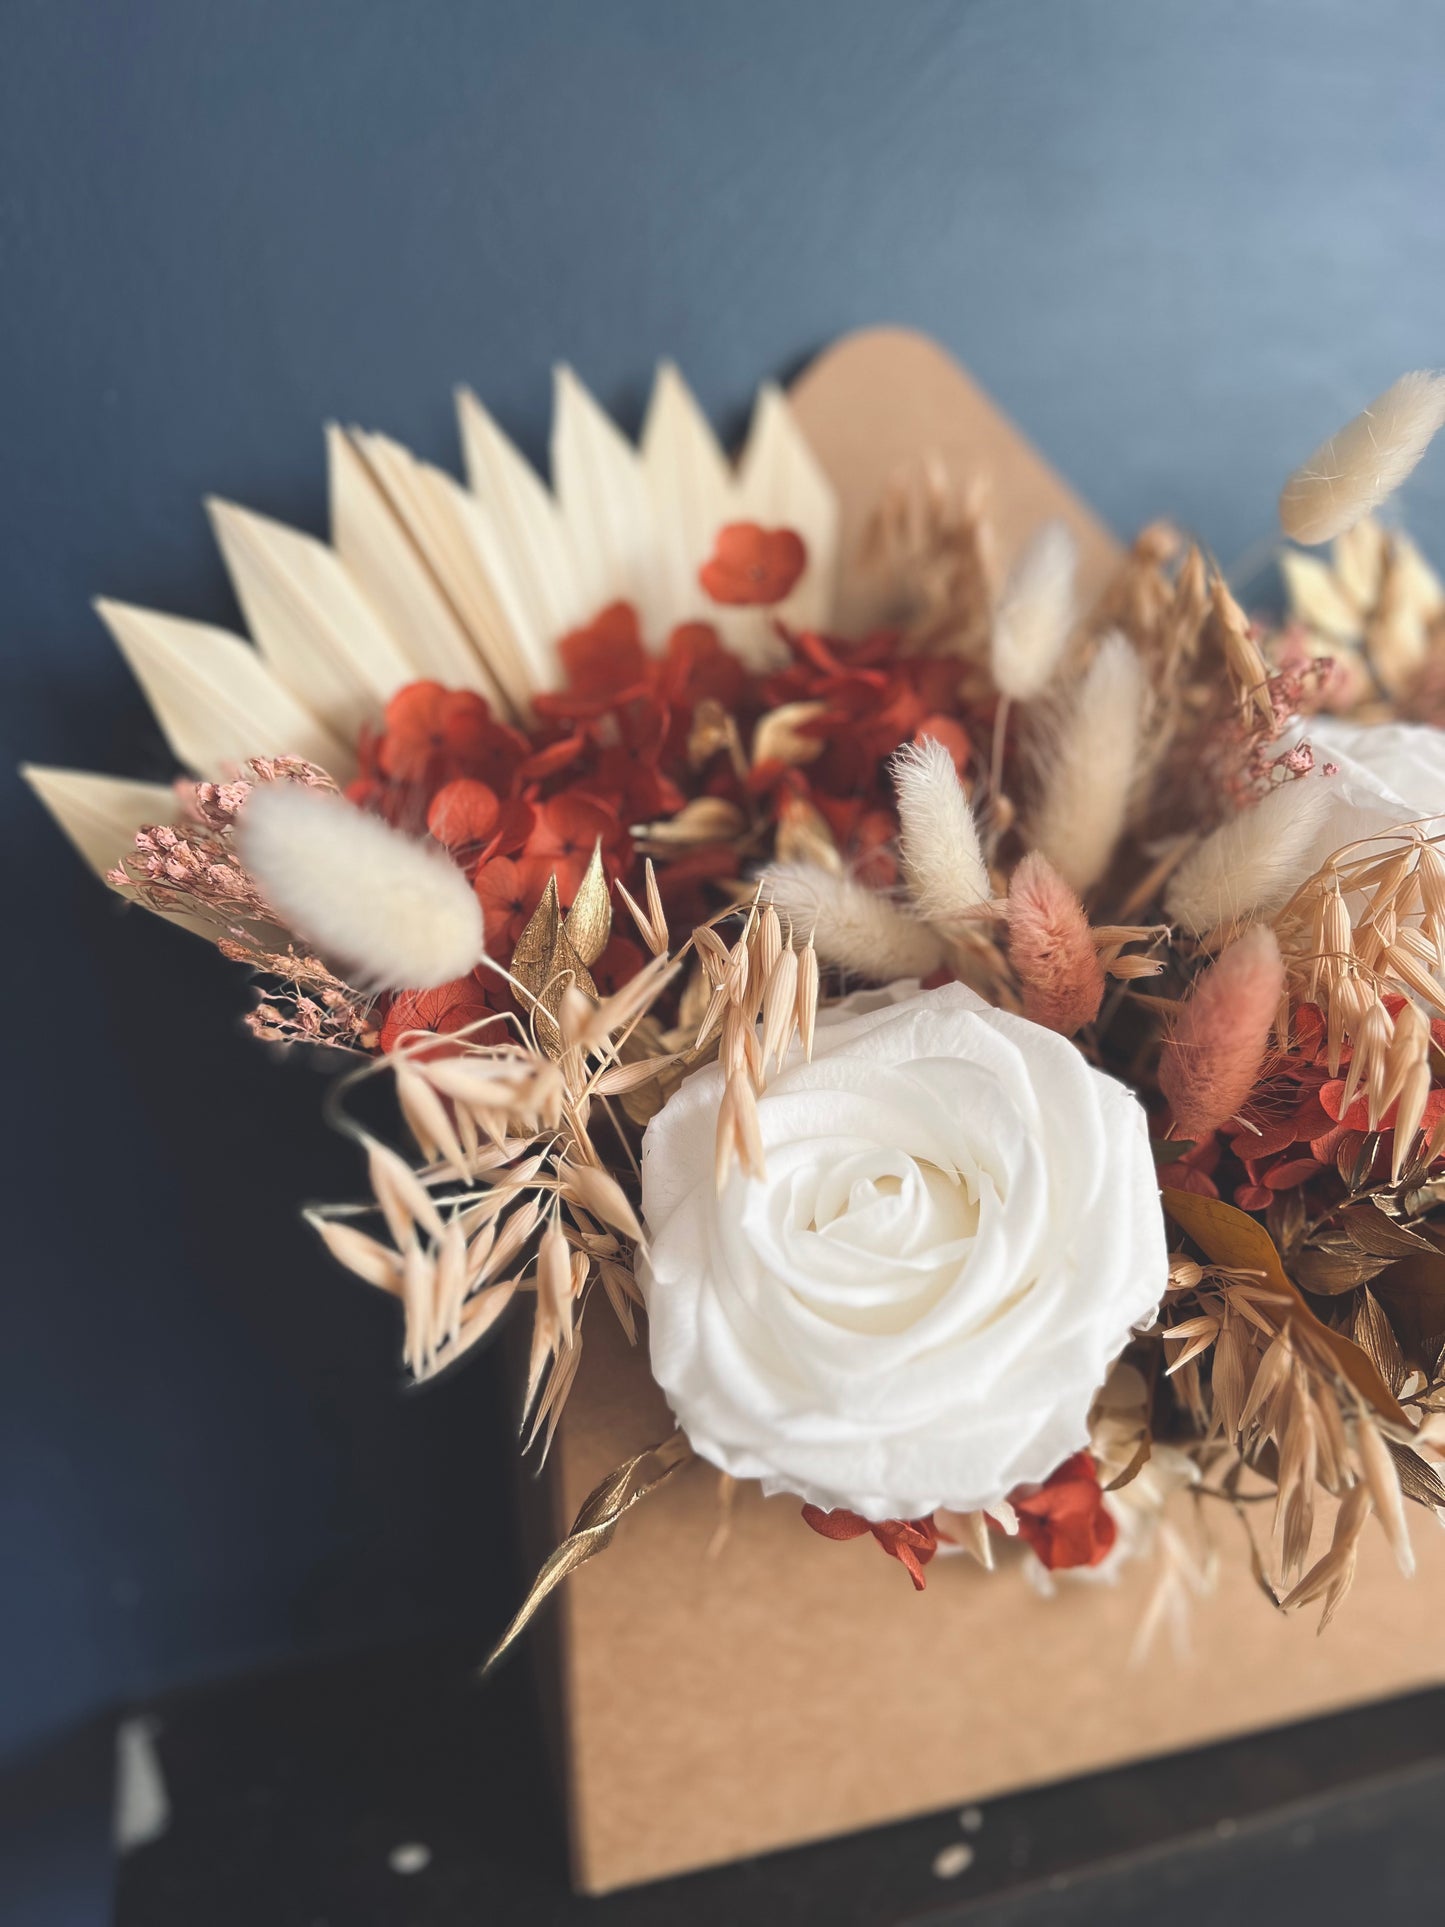 Boho Floral Decor, Bohemian Dried Flower Arrangement, Handmade House Gift, Beige and Pastel Flower Gift for Her, Everlasting Flower Design